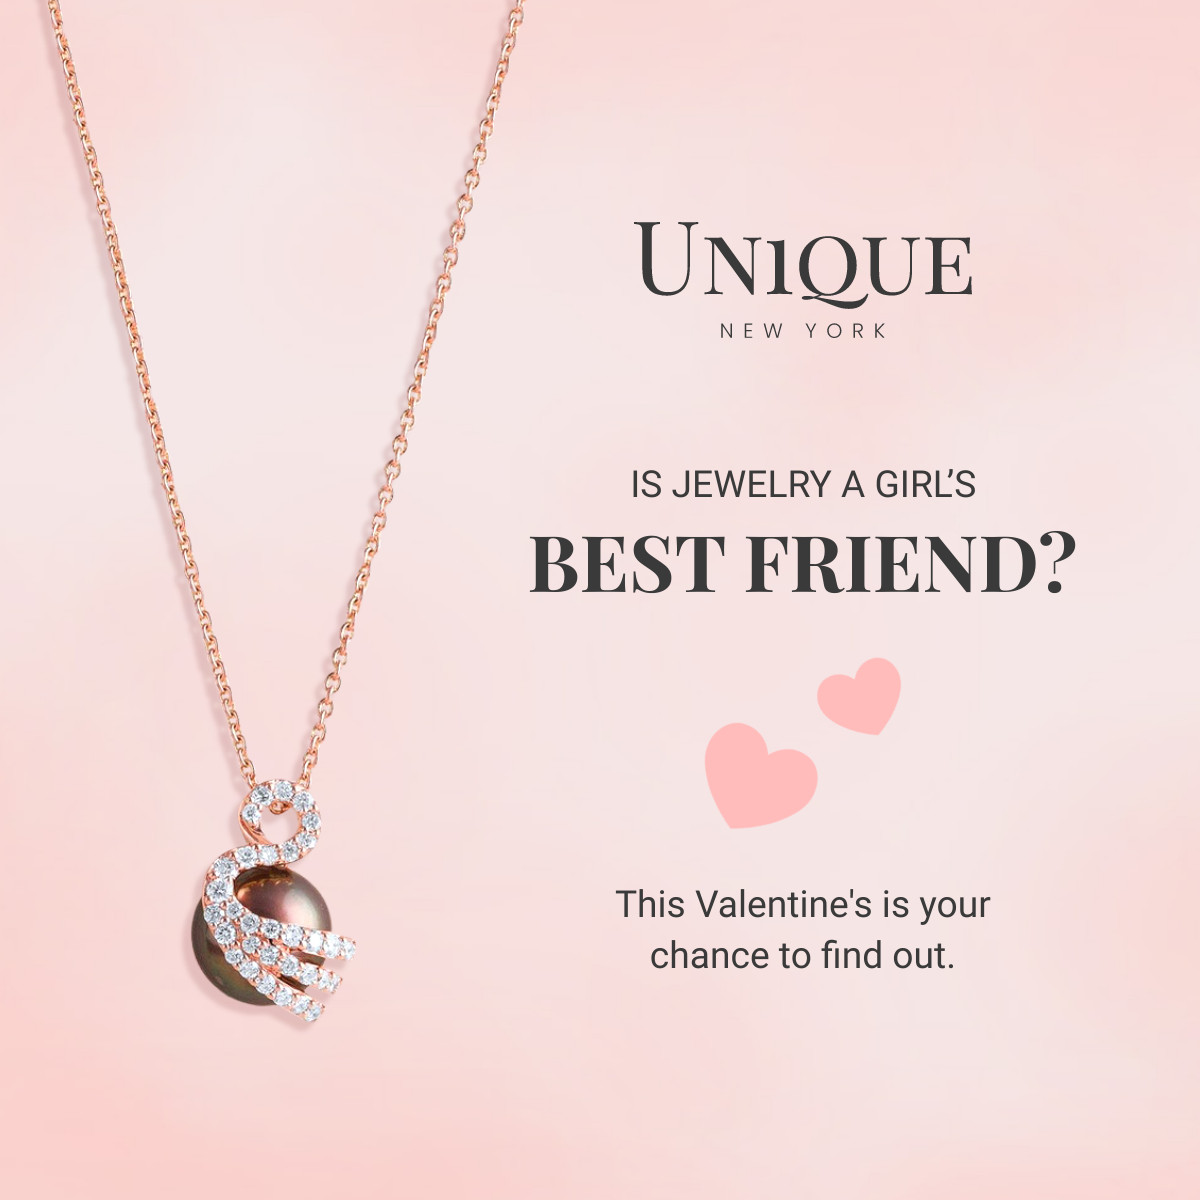 Jewelry Best Friend on Valentine's Day Inline Rectangle 300x250